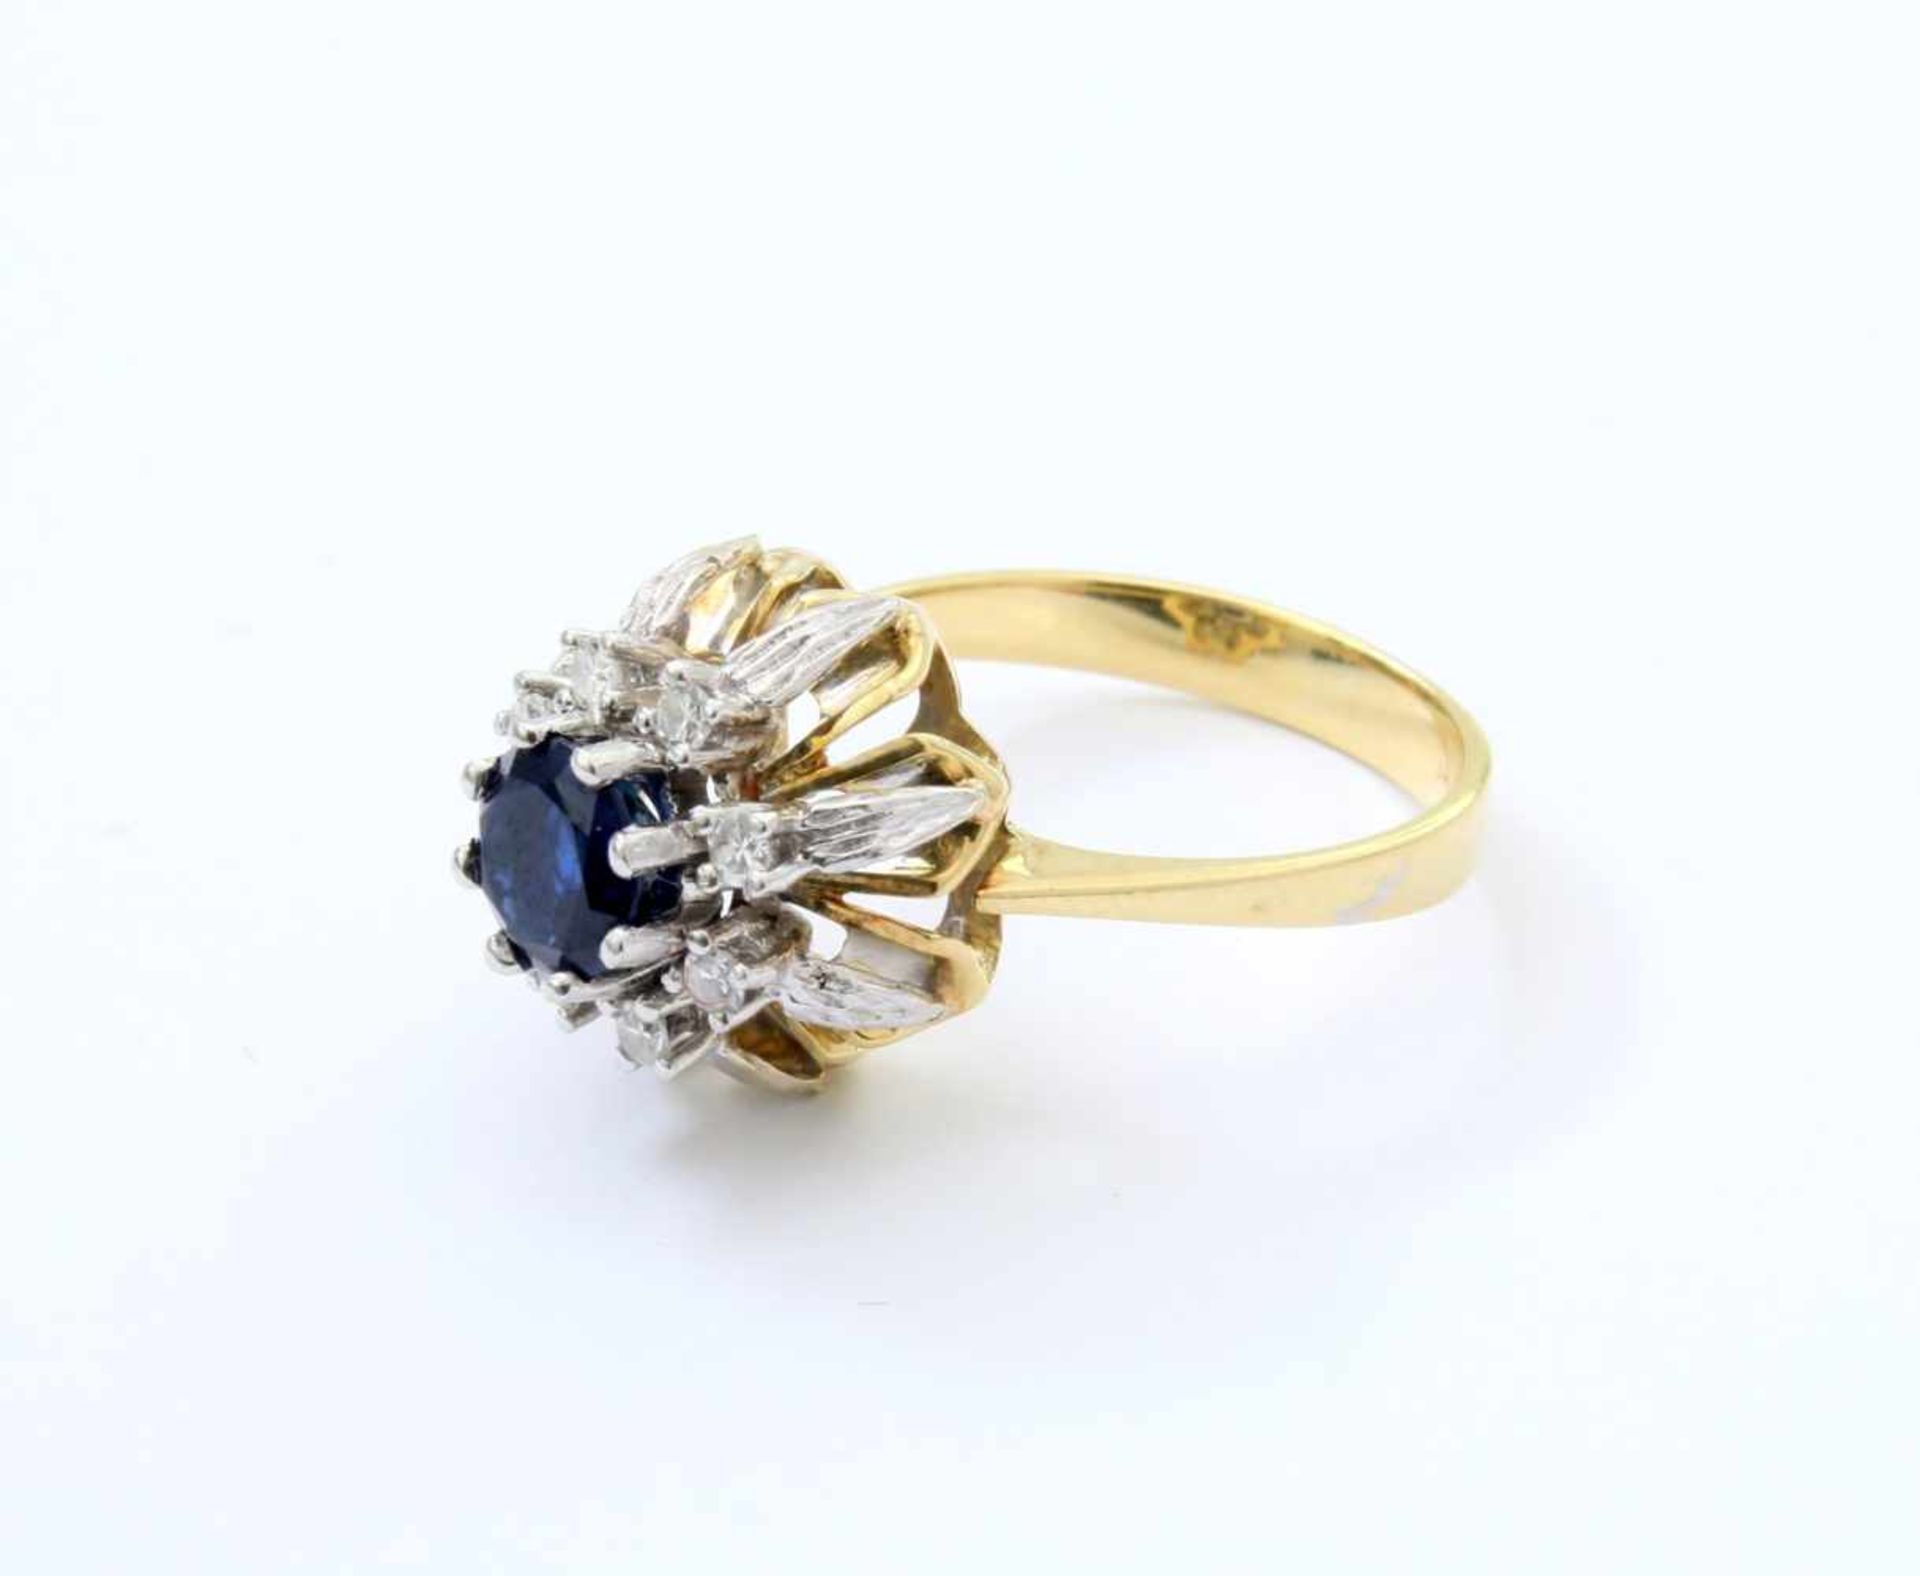 Gelbgold- /Weißgold-Ring mit Brillanten und Safir GG/WG 585, mittig tiefblauer Safir im - Bild 3 aus 4